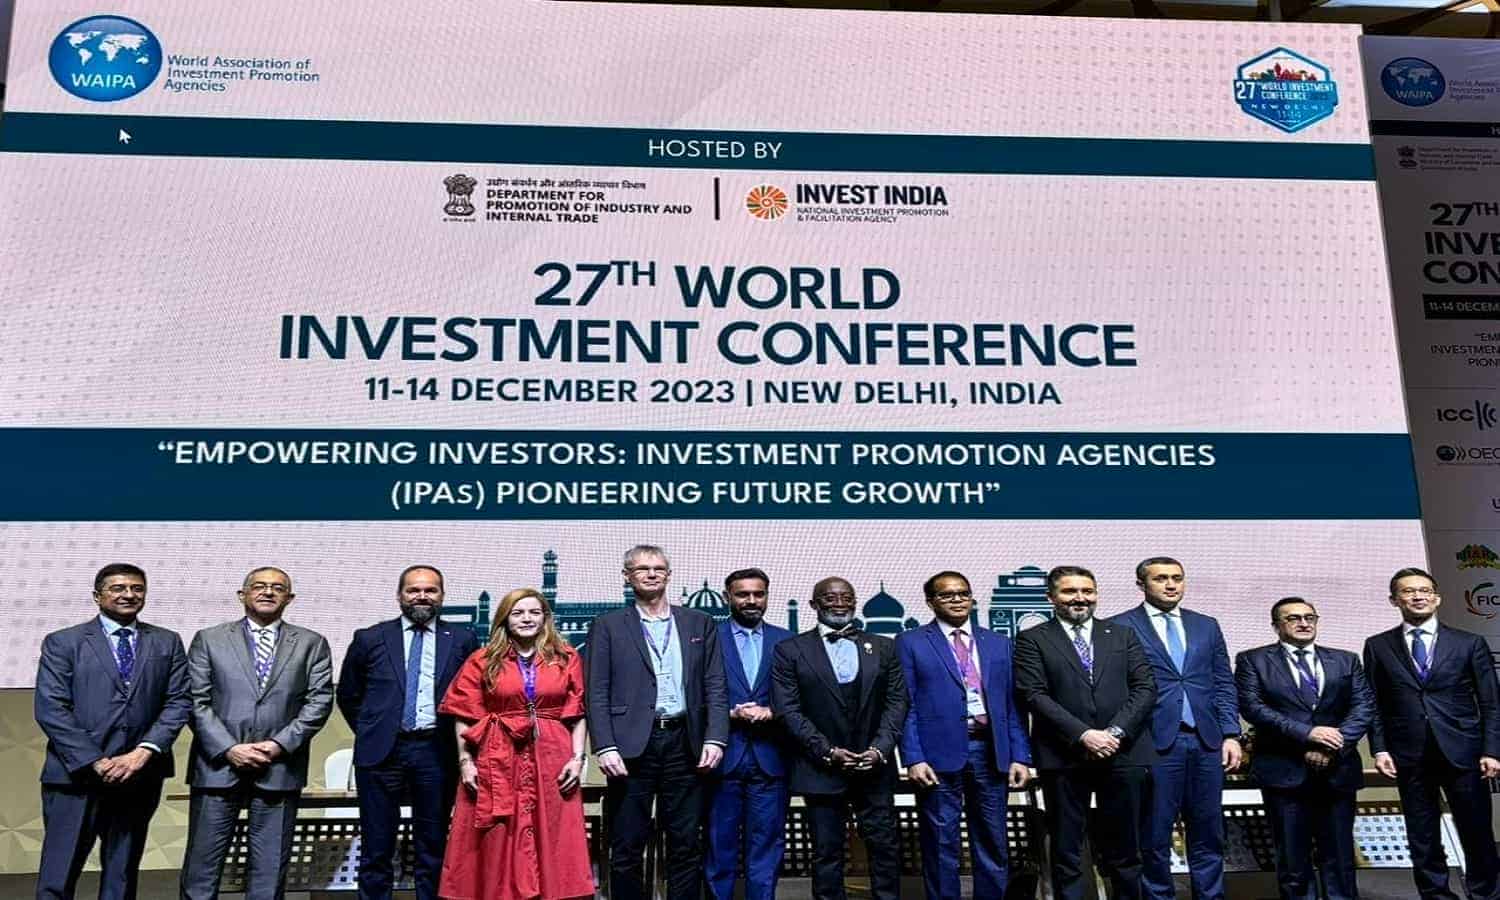 هيئة الاستثمار تفوز بمنصب المدير الإقليمي للشرق الأوسط وشمال أفريقيا بلجنة تابعة لـ WAIPA
